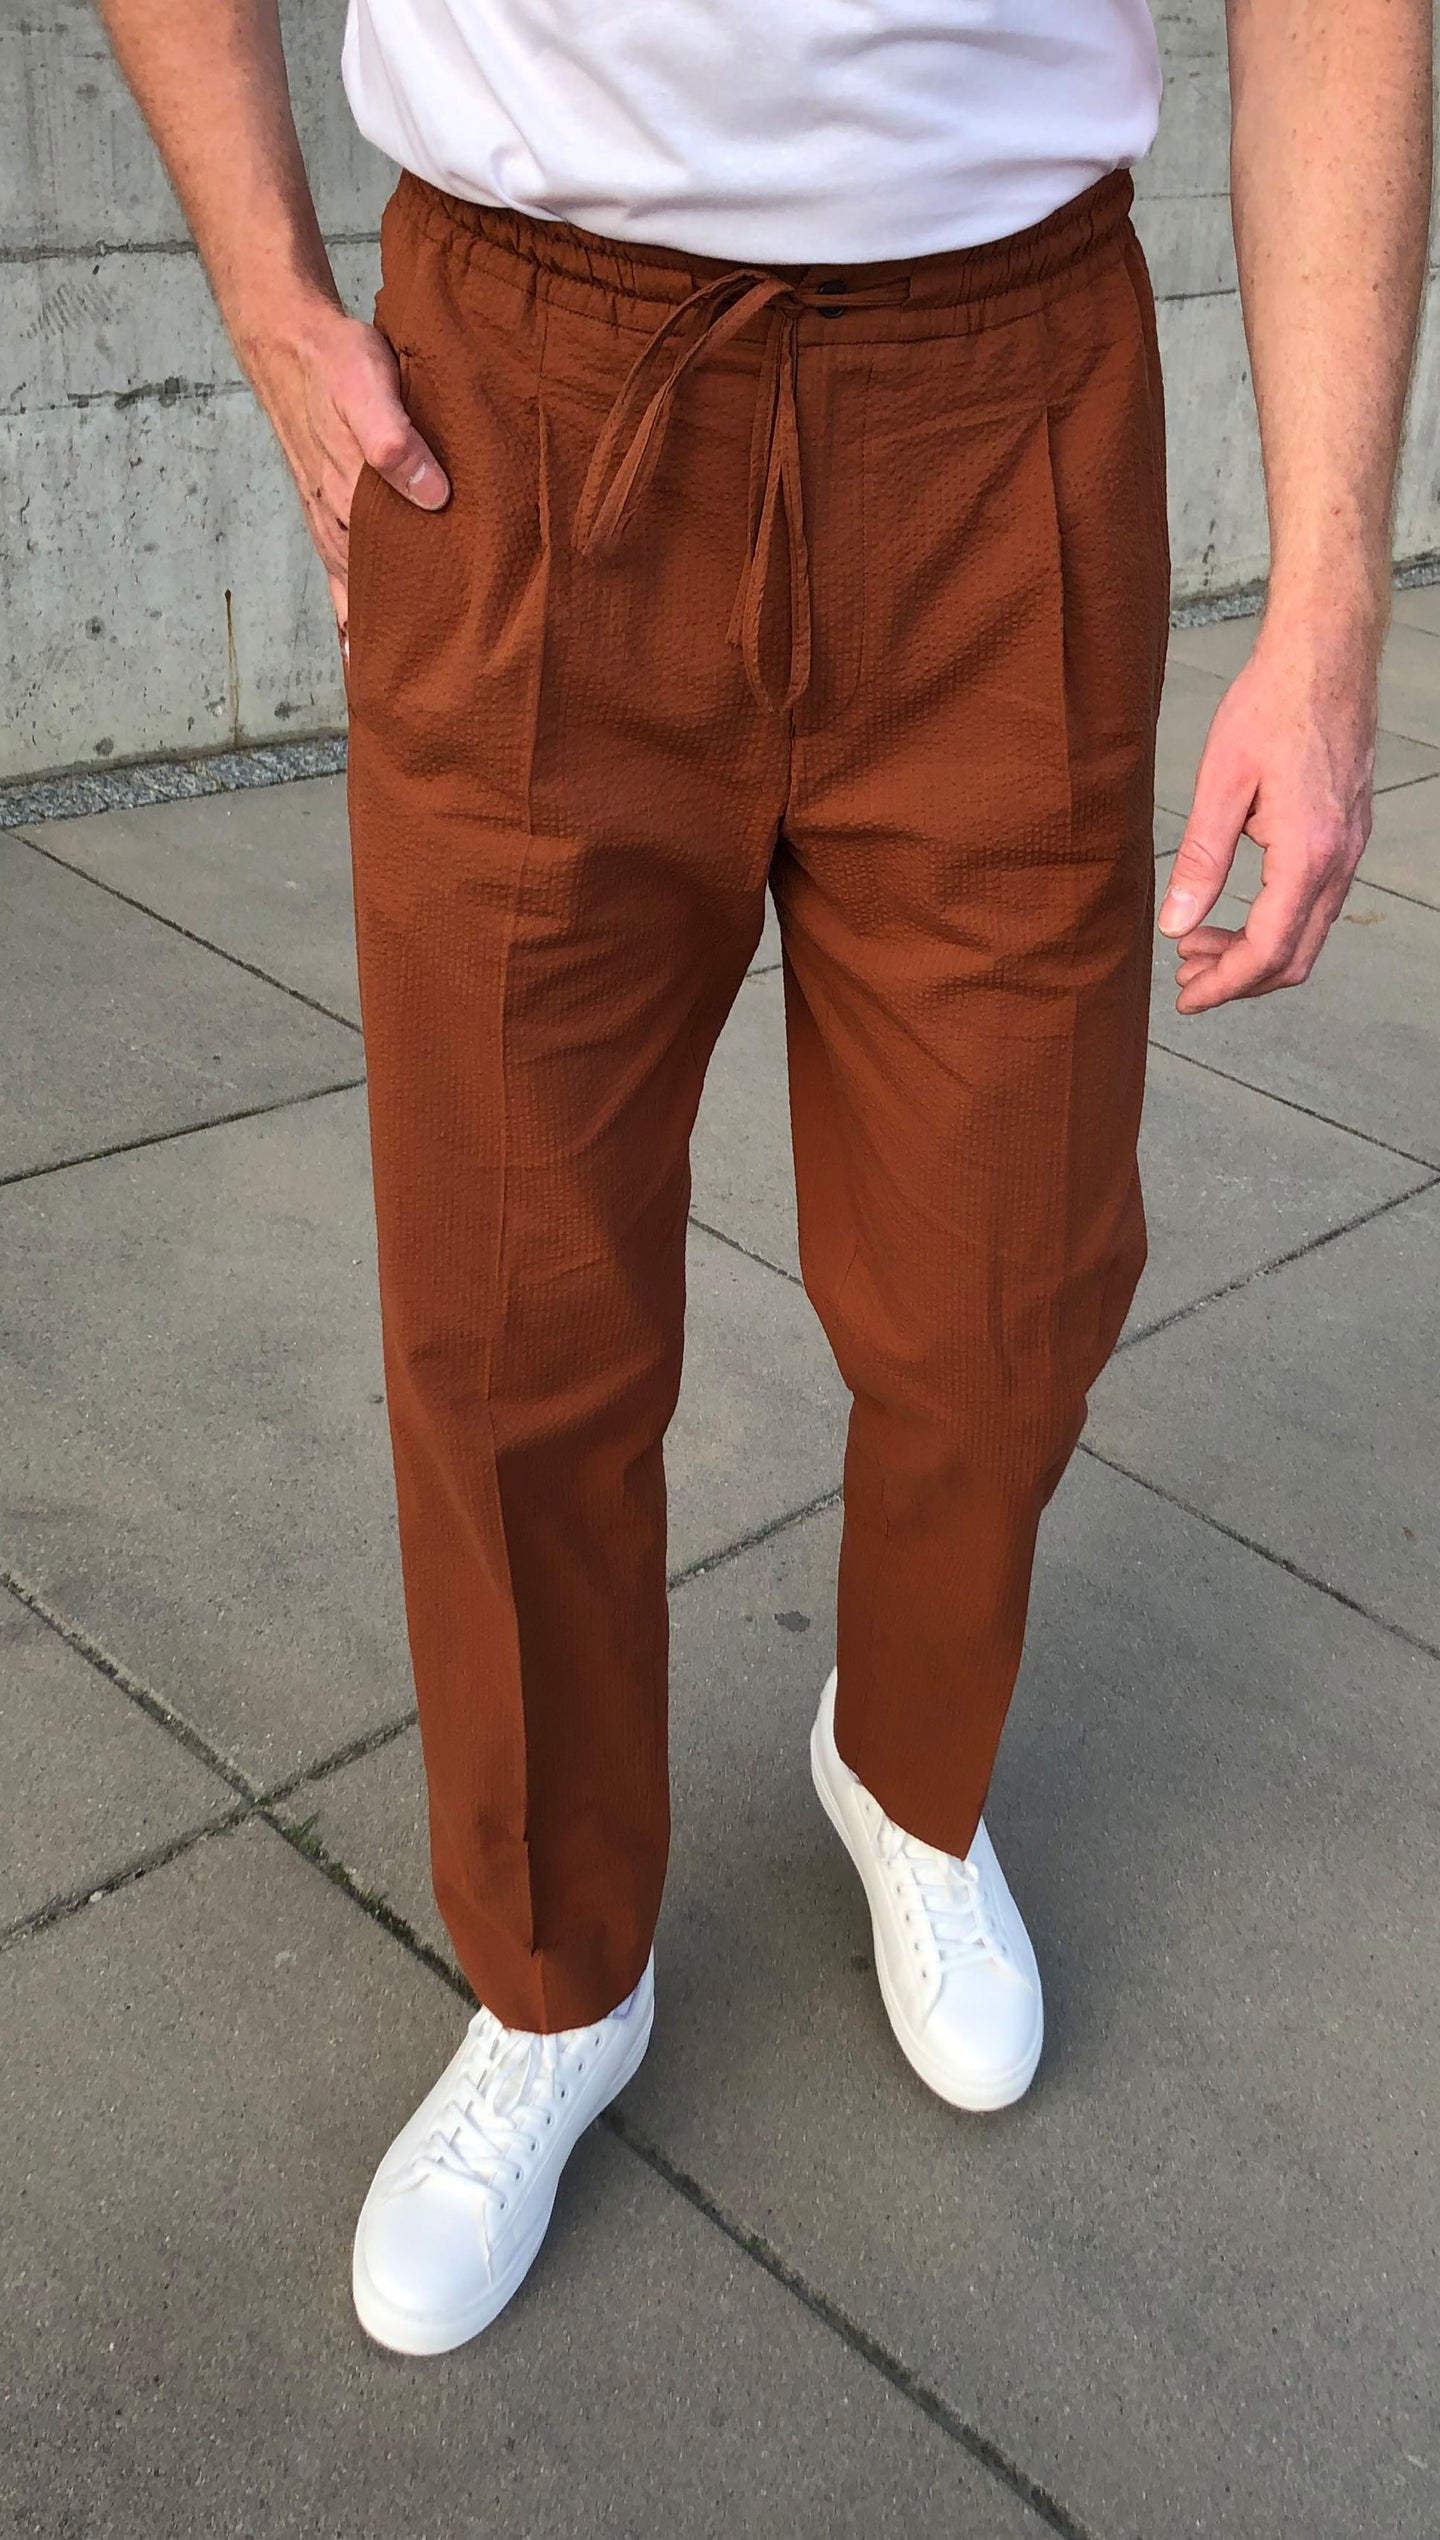 Seersucker Cotton Trousers Rust